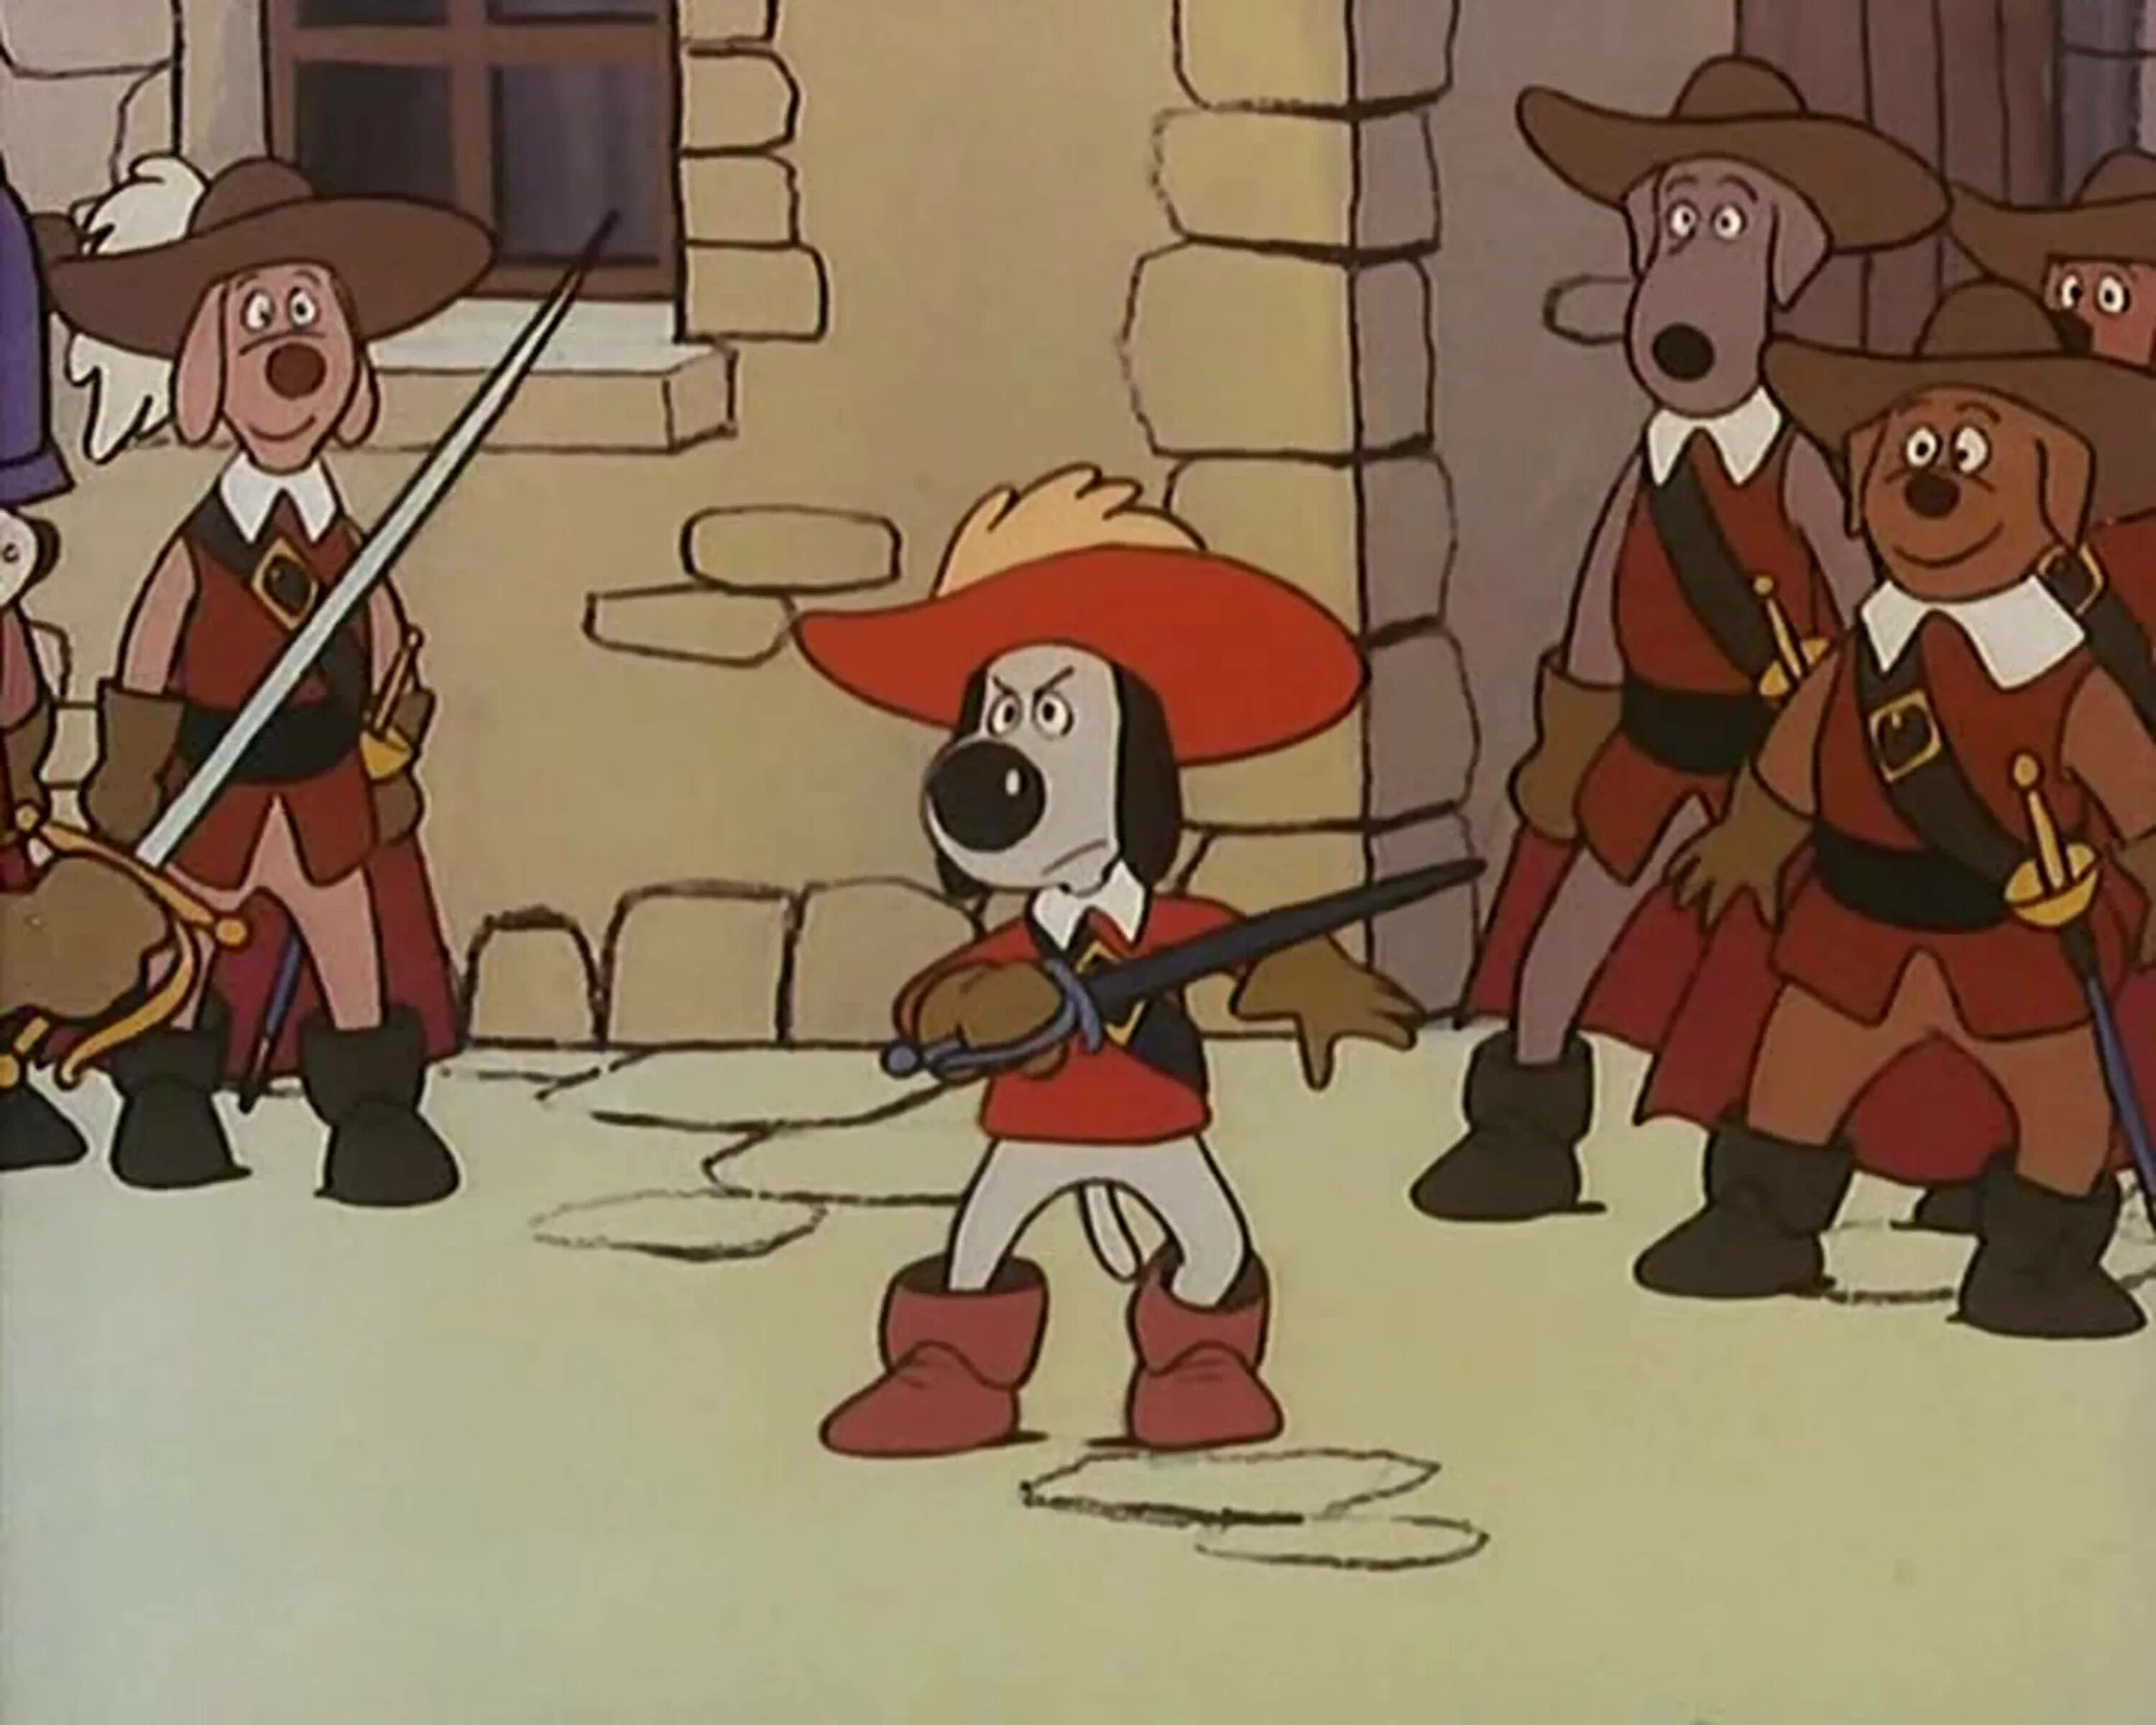 Дартаньгав и три пса мушкетера. Д'Артаньгав и три пса-мушкетёра (1981). Догтаньян и три мушкетера.